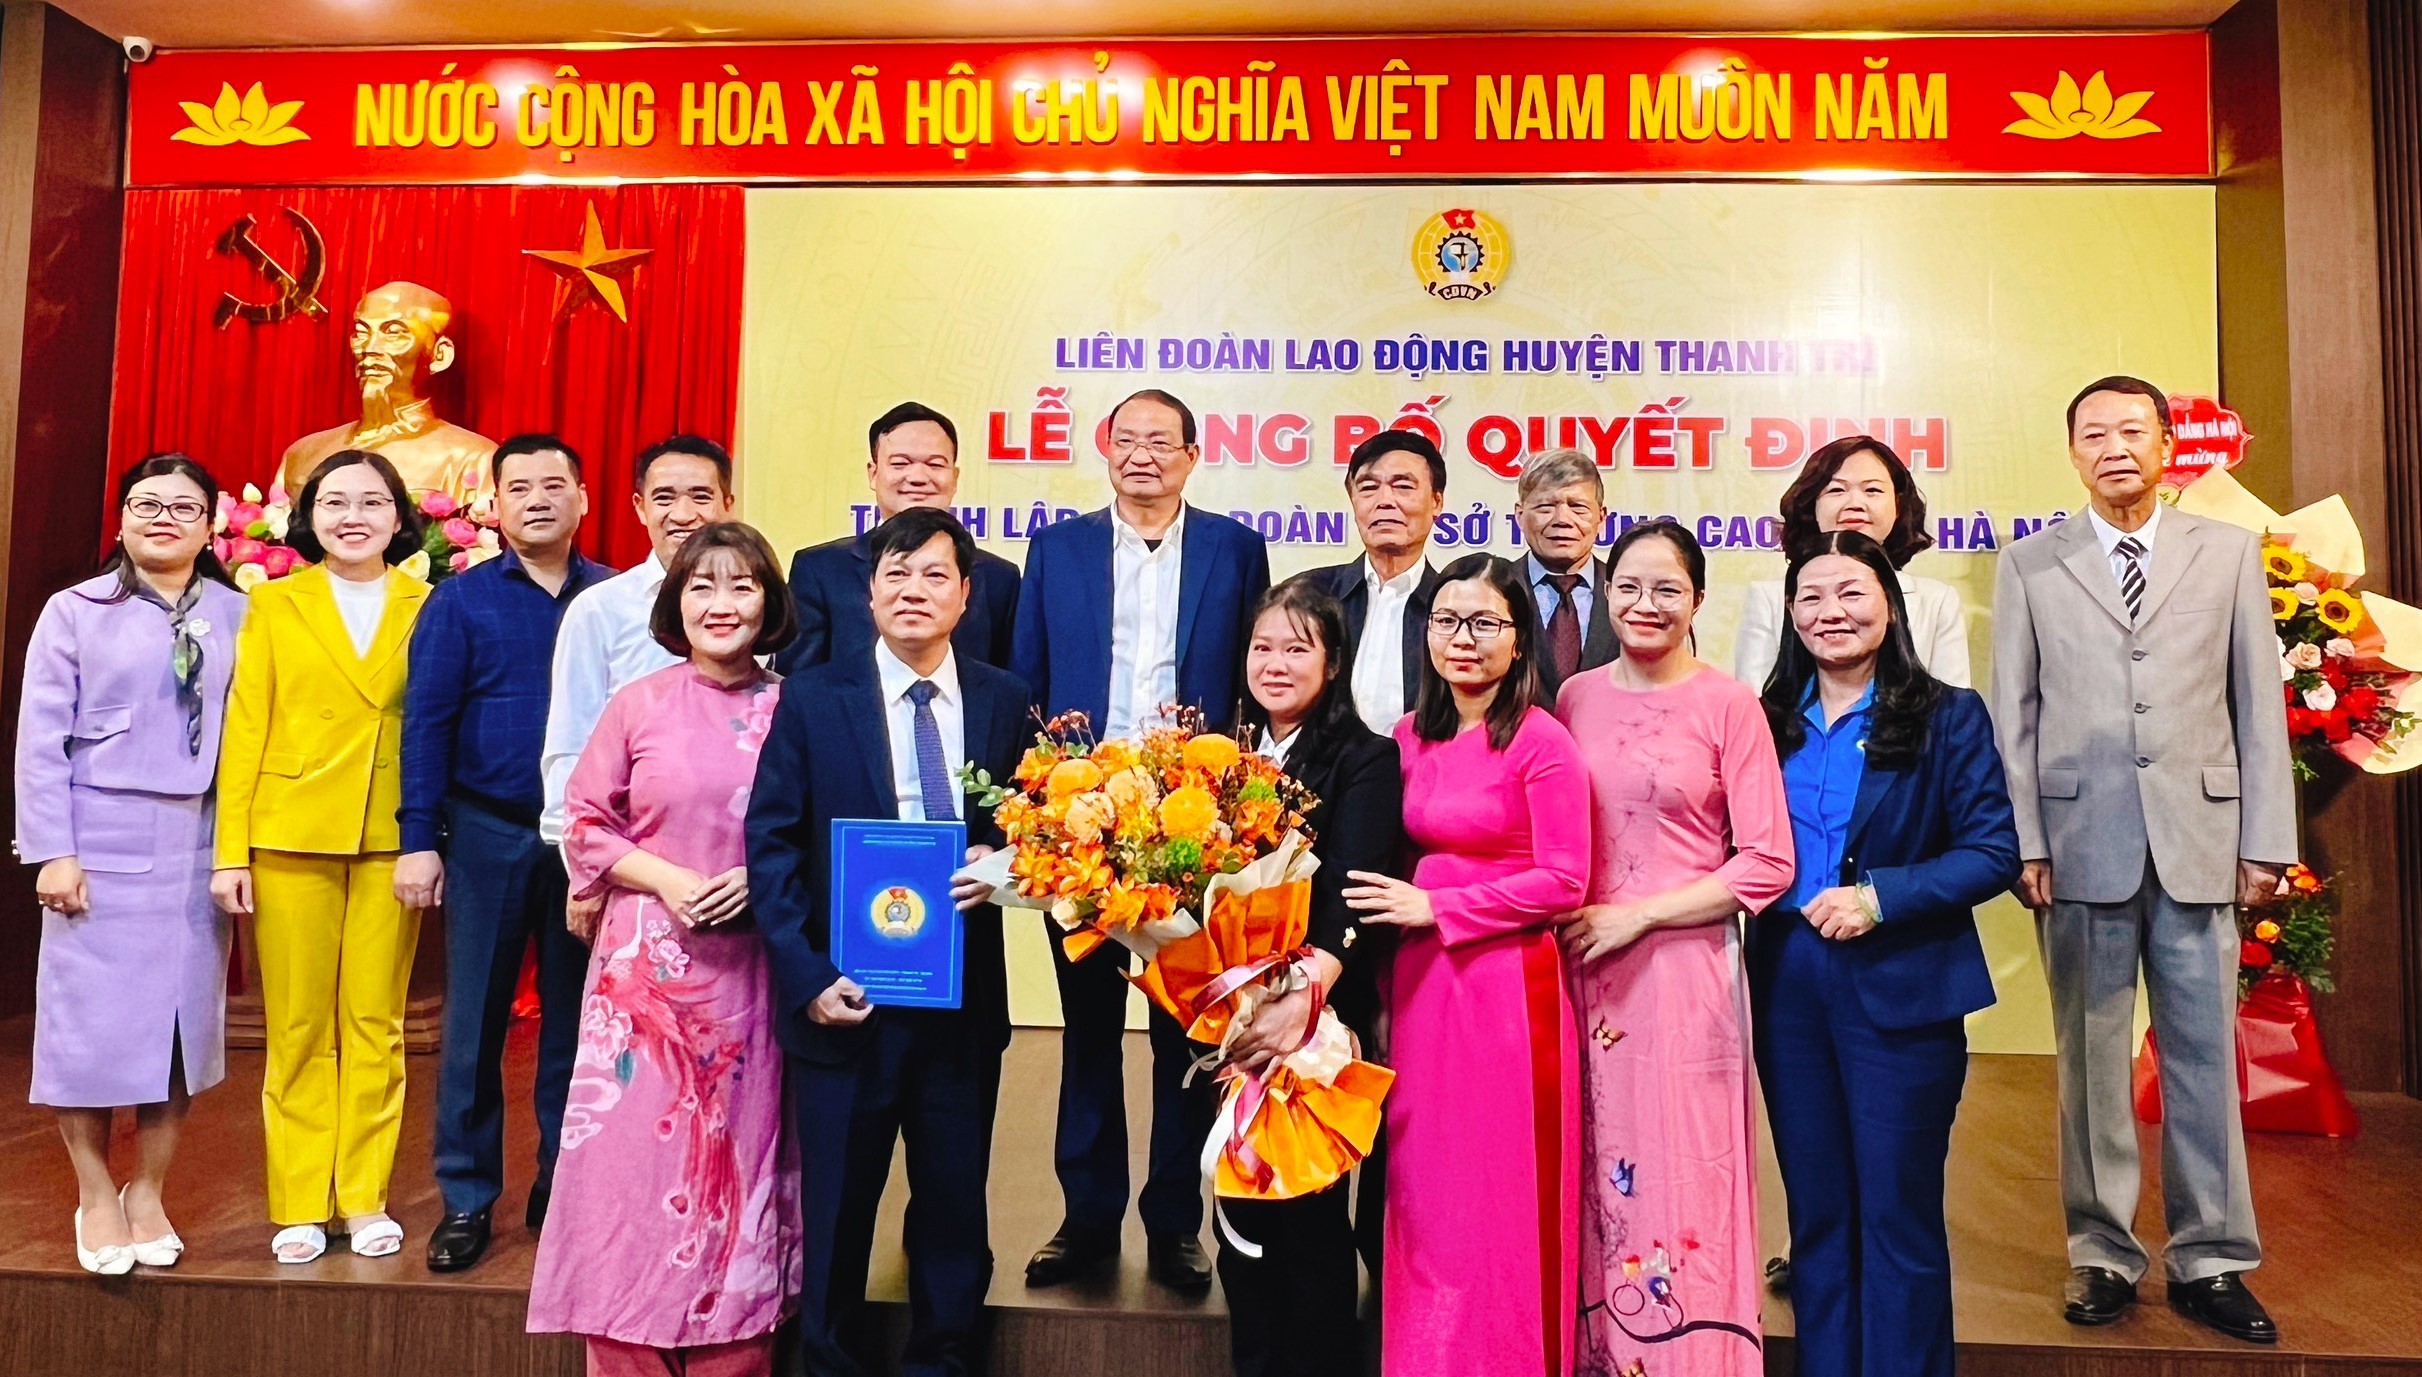 LĐLĐ huyện Thanh Trì: Thành lập Công đoàn cơ sở Trường Cao đẳng Hà Nội